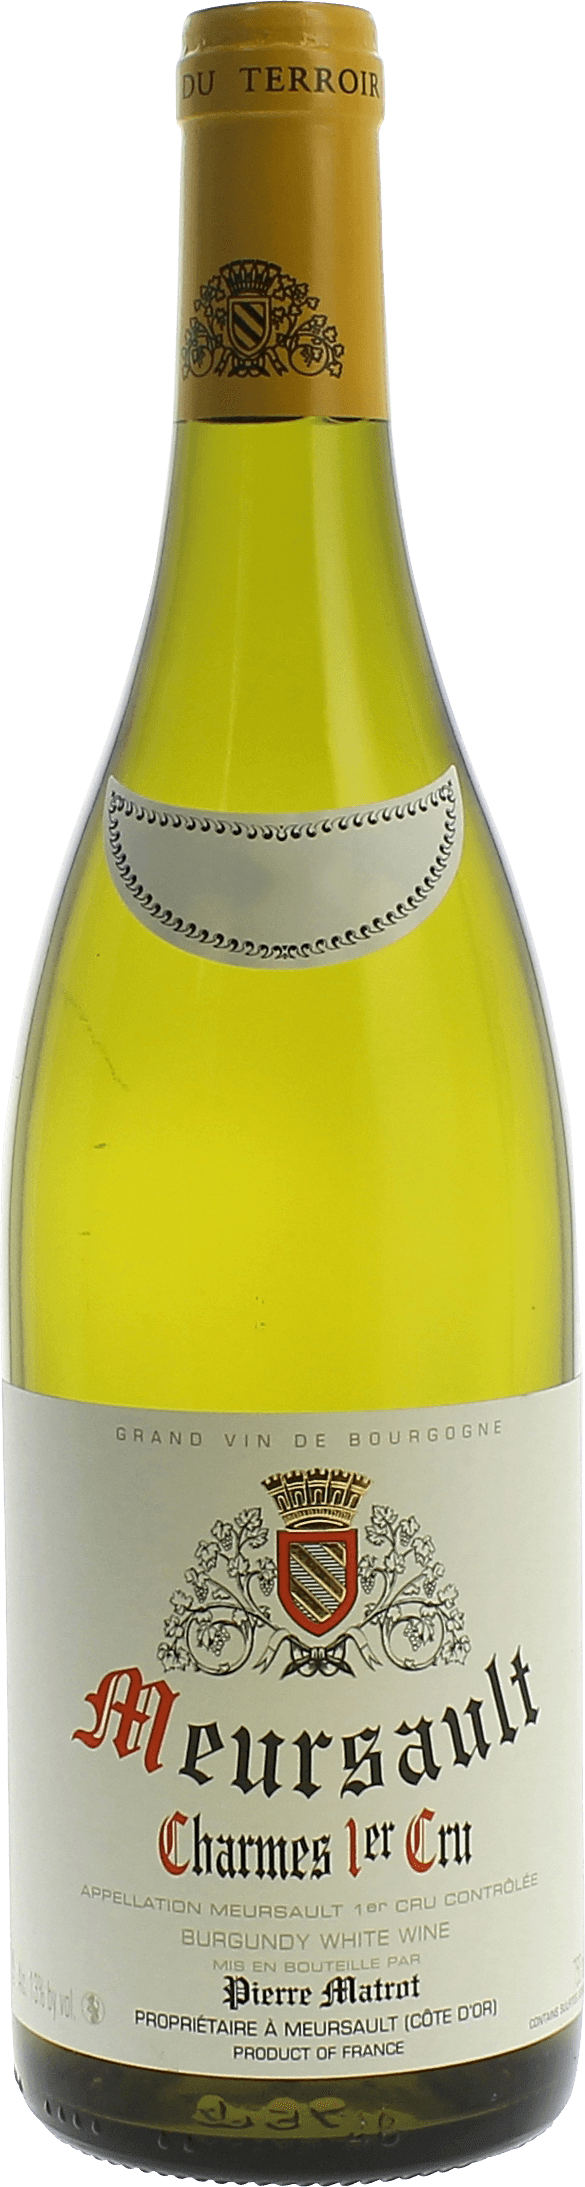 Meursault charmes 1er cru 2017 Domaine MATROT, Bourgogne blanc